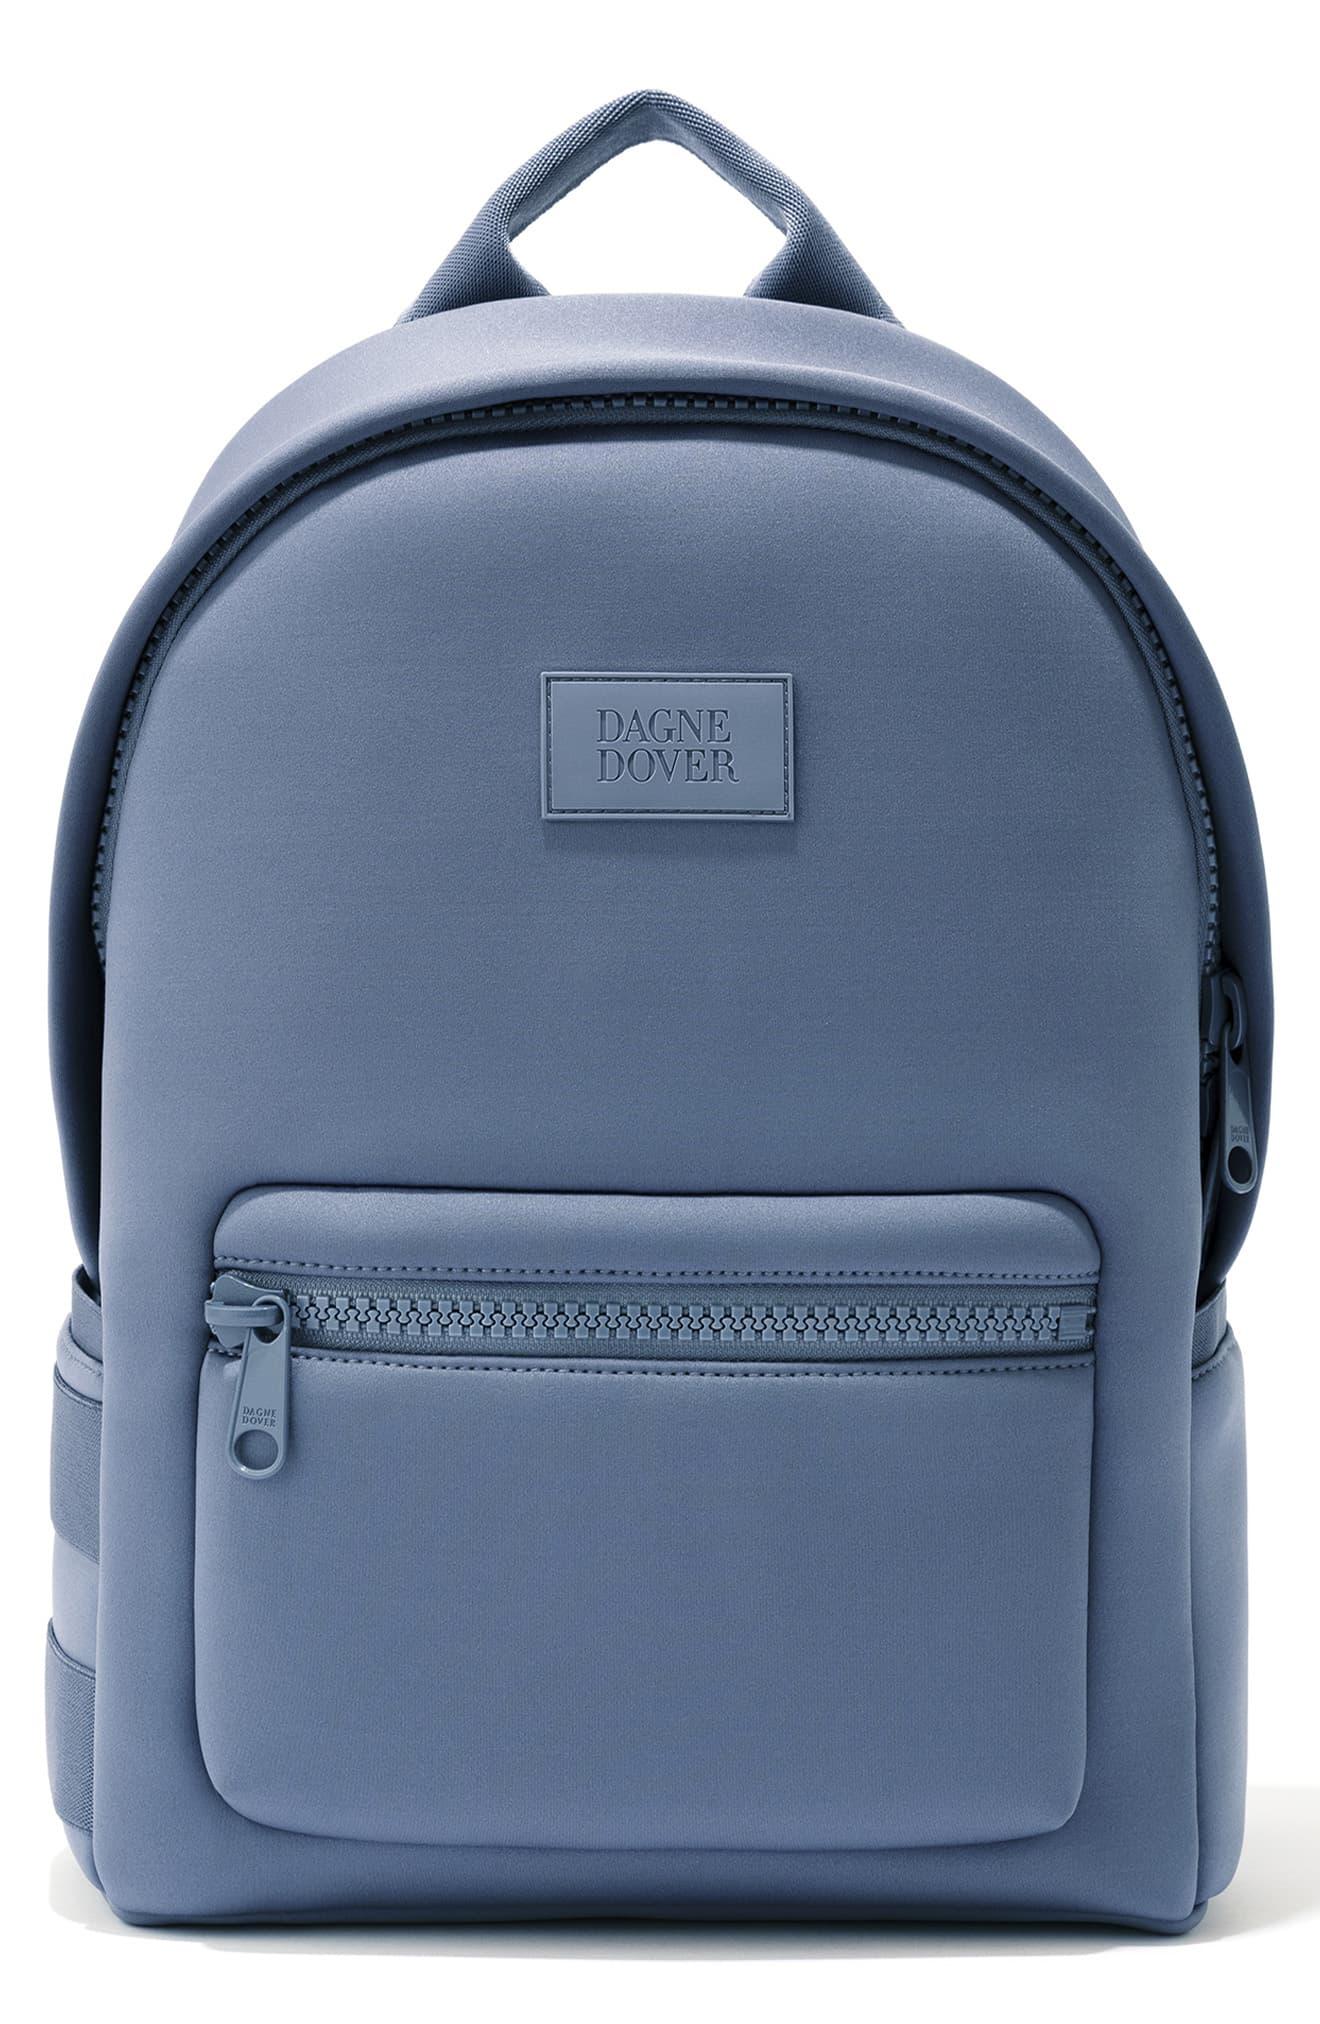 Dagne Dover Medium Dakota Neoprene Backpack in Ash Blue (Blue) - Lyst